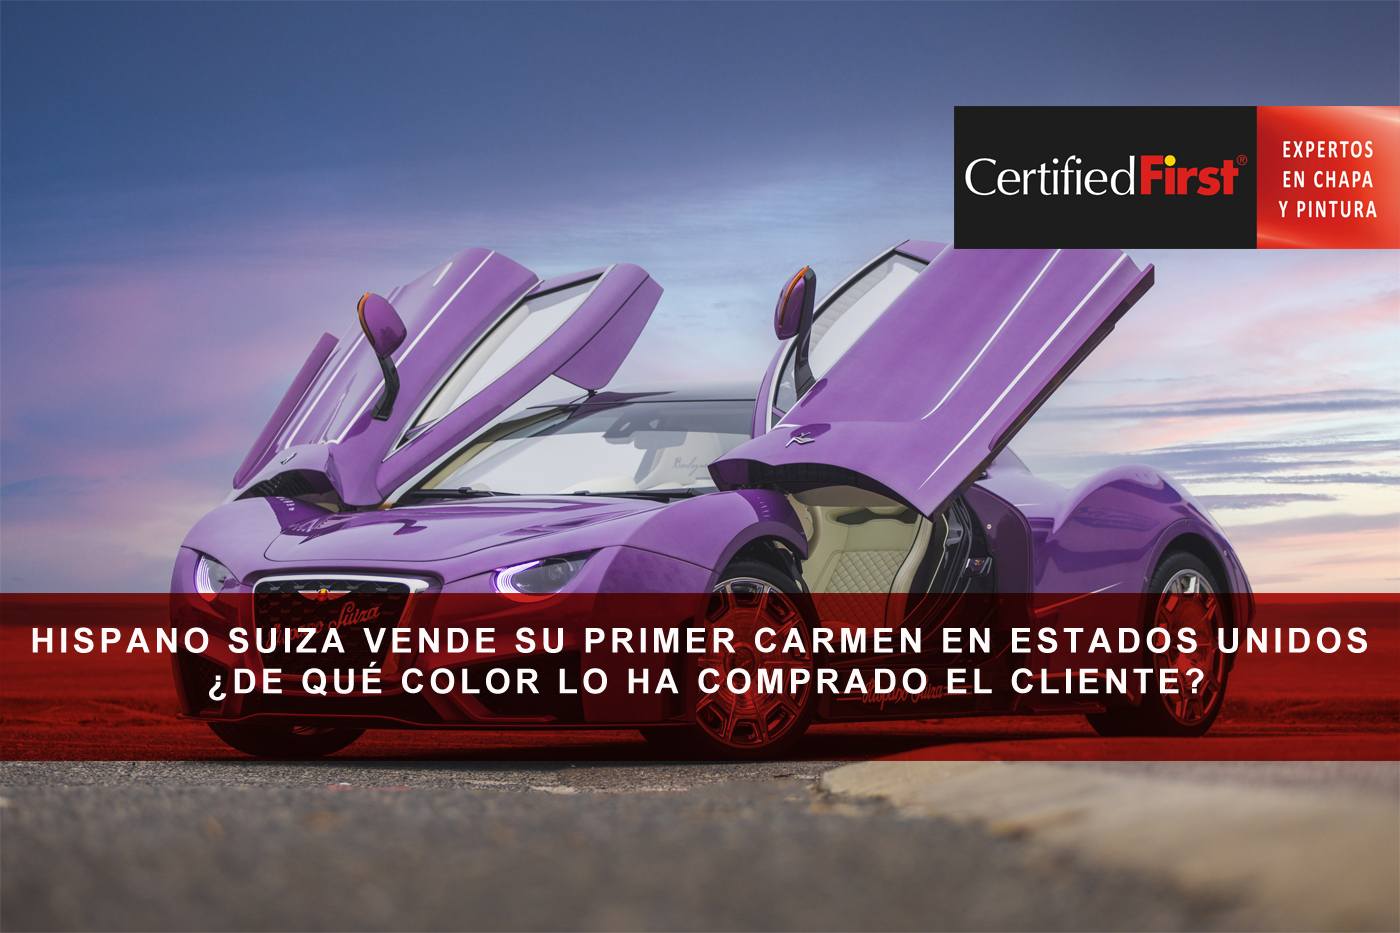 Hispano Suiza vende su primer Carmen en Estados Unidos ¿de qué color lo ha comprado el cliente?